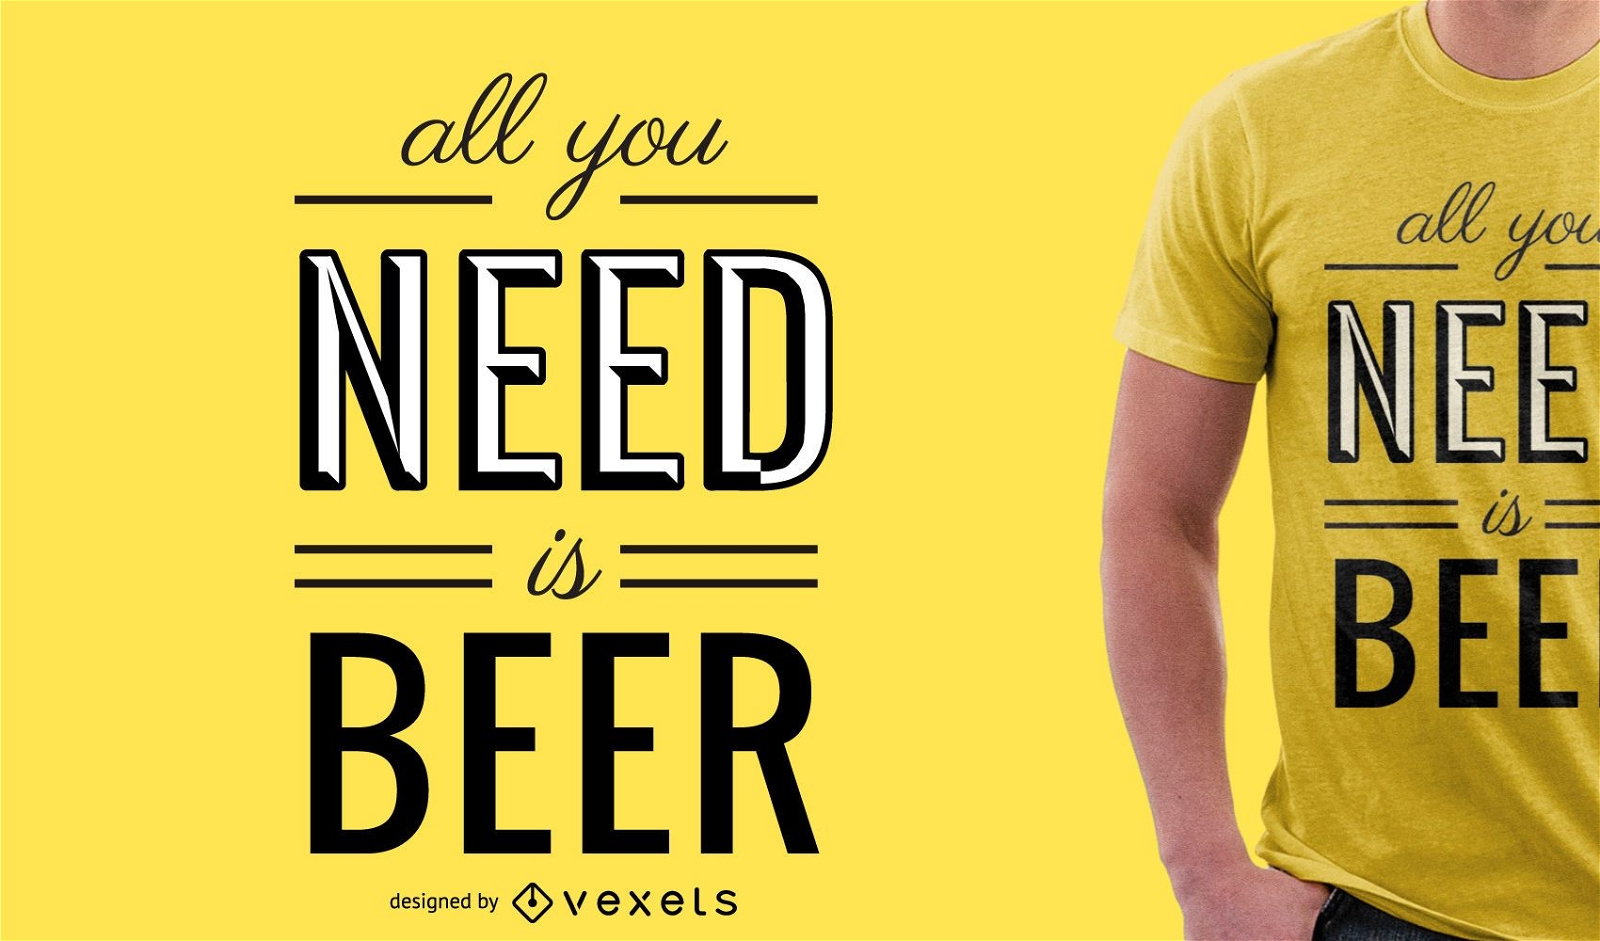 Alles was Sie brauchen ist Bier T-Shirt Design